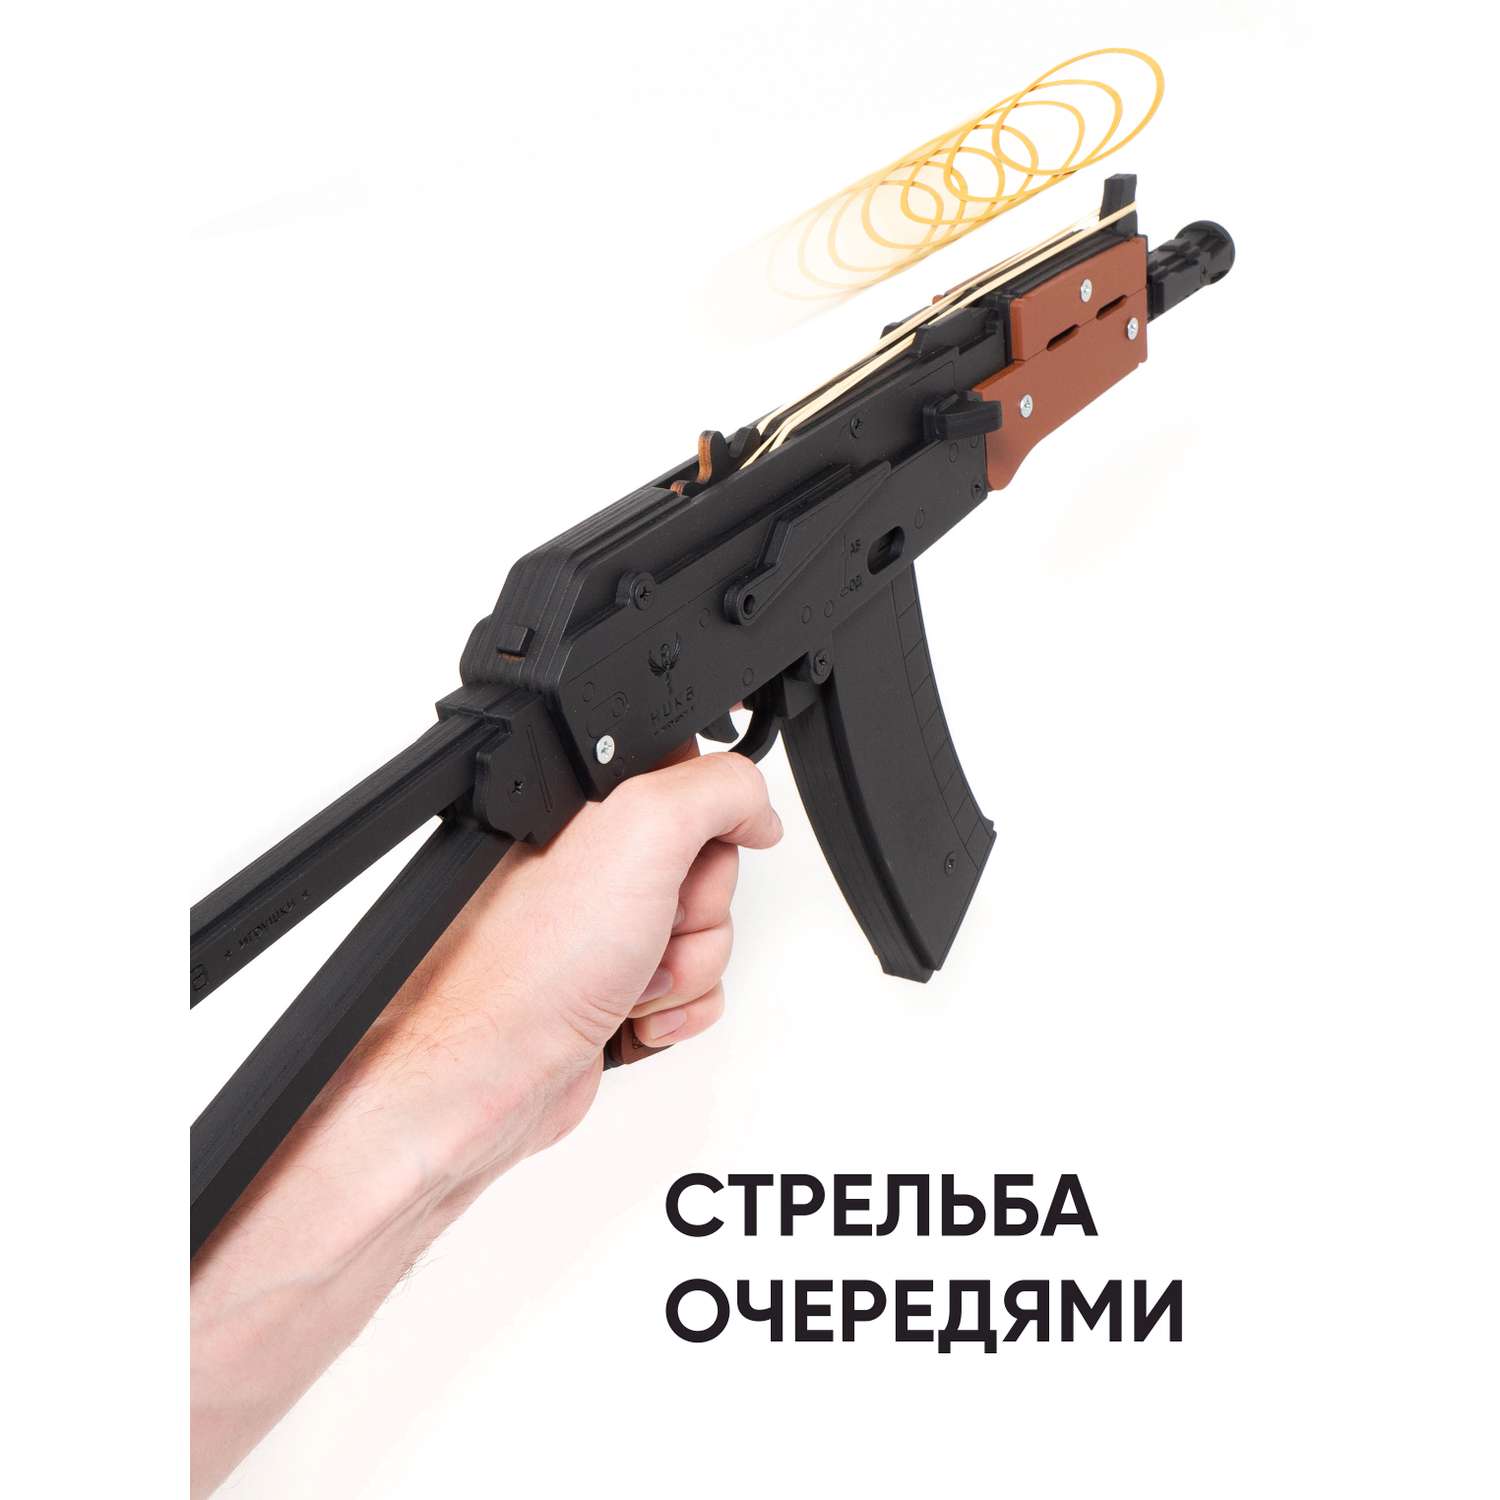 Резинкострел НИКА игрушки Автомат АКС-74У в подарочной упаковке - фото 5